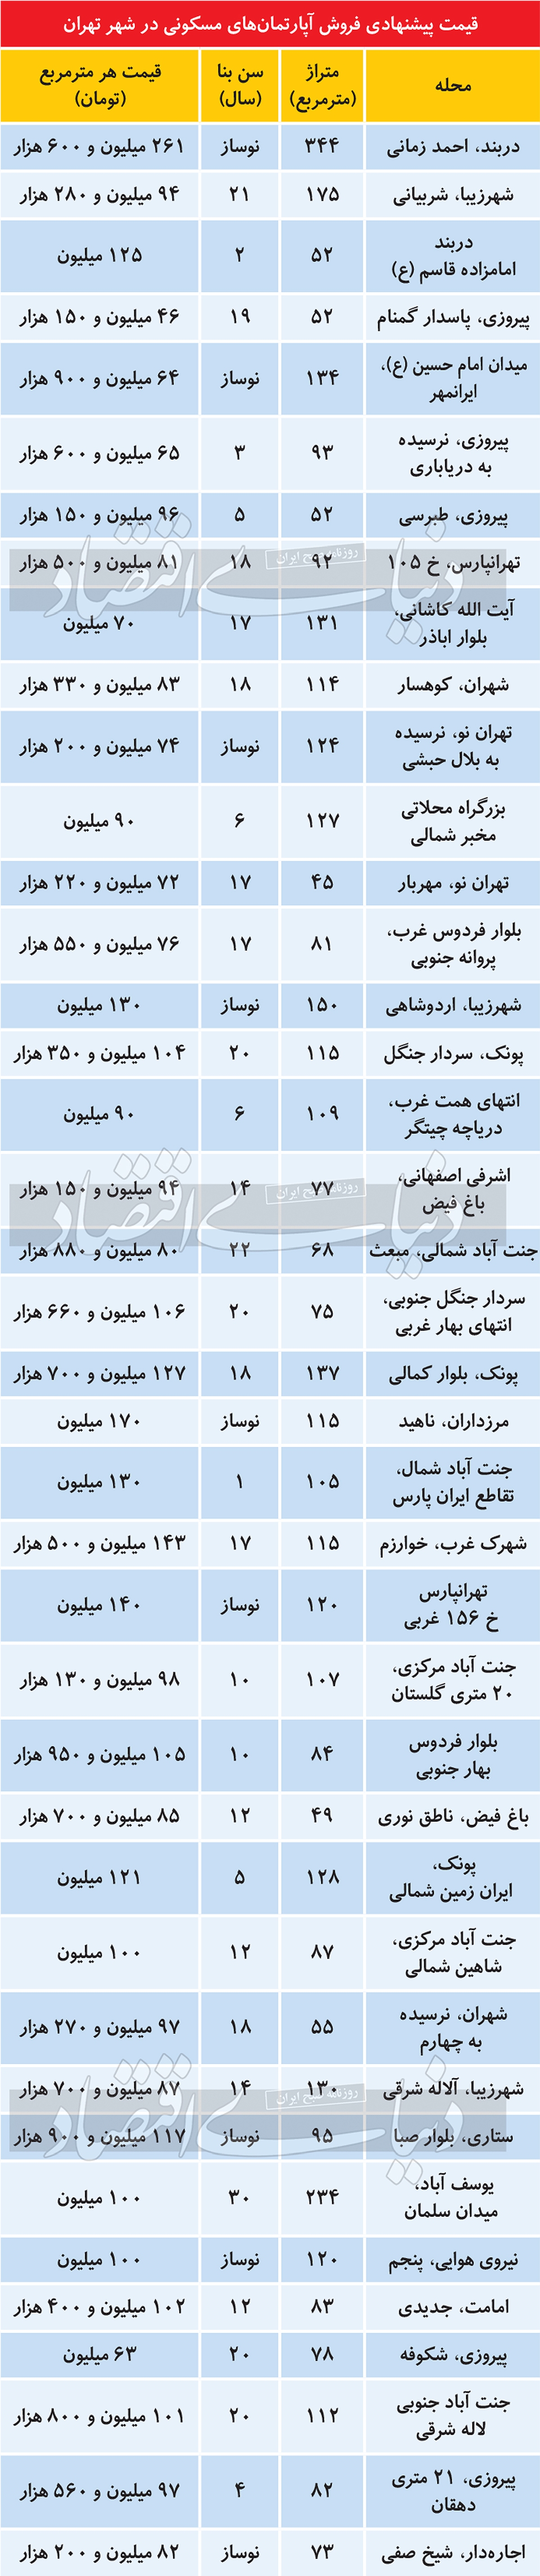 قیمت پیشنهادی فروش آپارتمان در تهران/ جدول